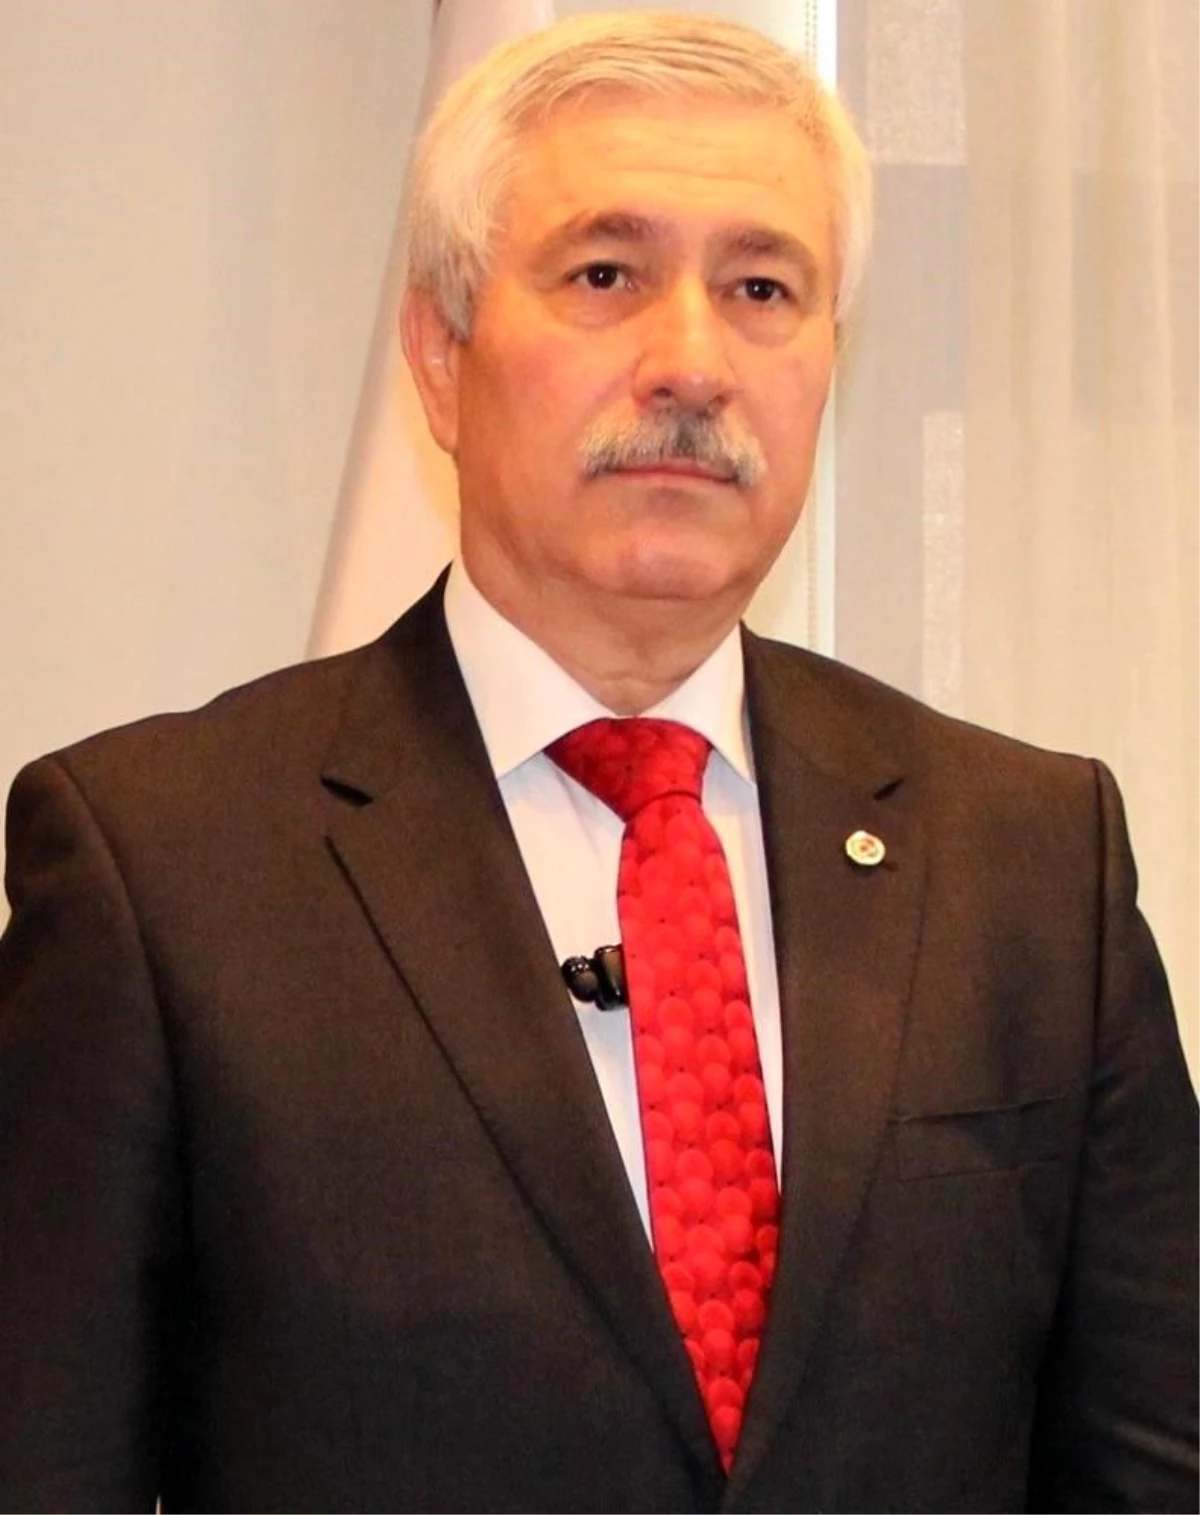 Eski Ege Üniversitesi Rektörü Mustafa Cüneyt Hoşcoşkun FETÖ davasında beraat etti